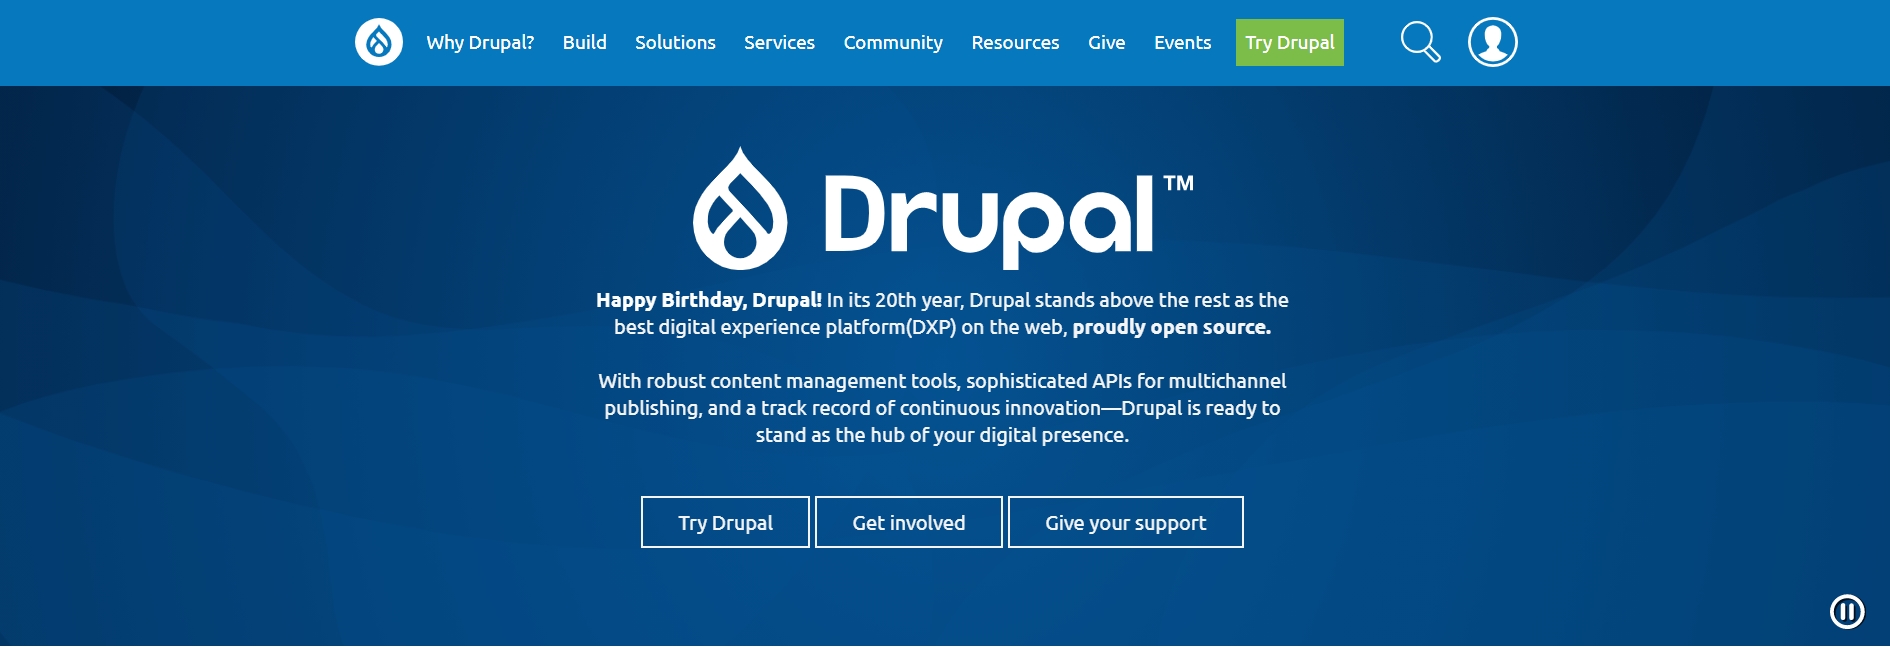 Drupal - Content Management System